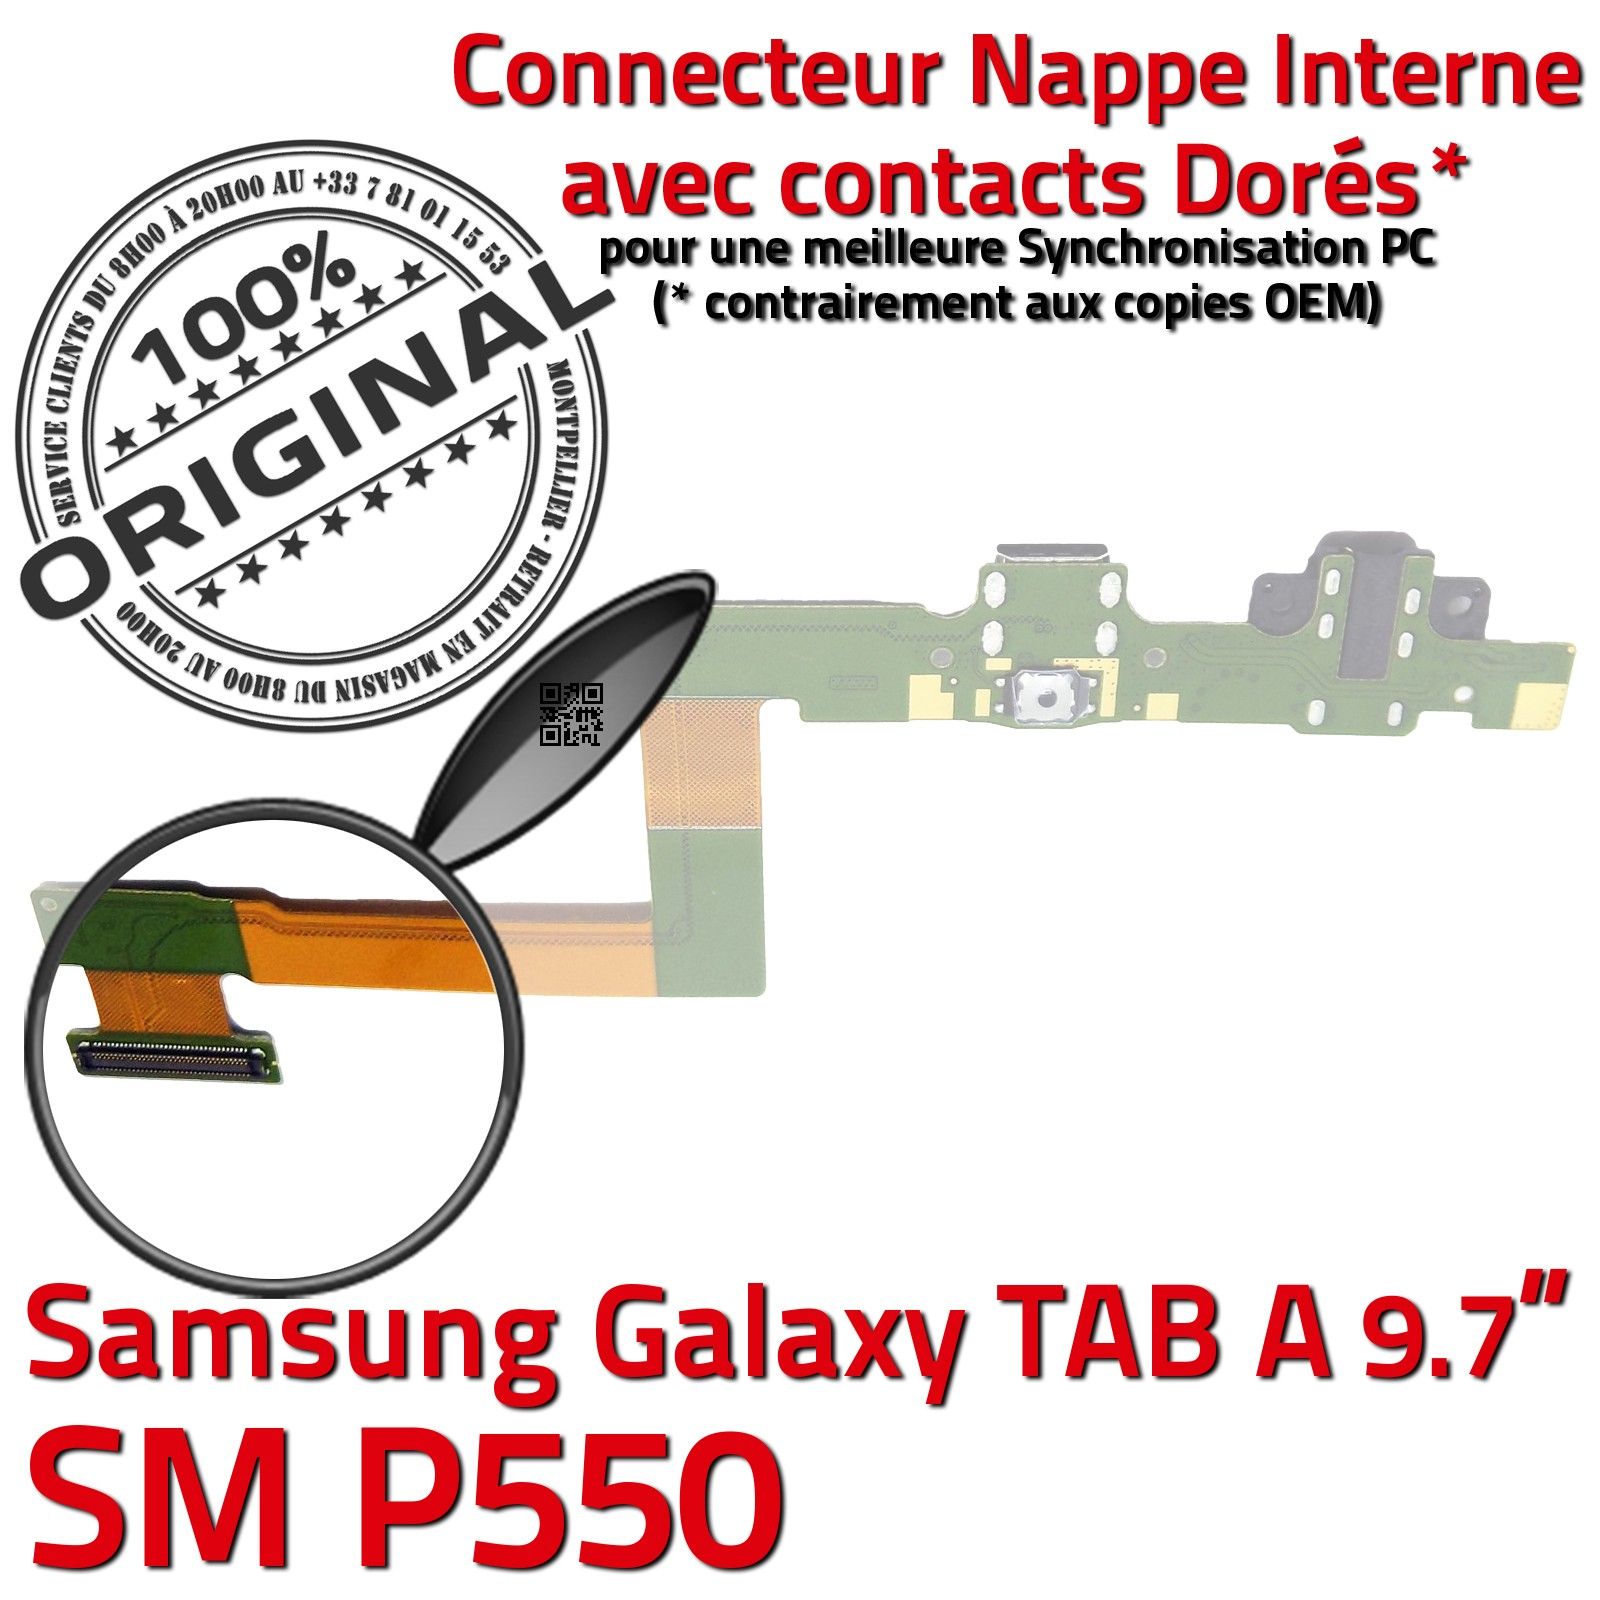 ORIGINAL Samsung Galaxy TAB A SM P550 Connecteur de Charge Chargeur Nappe Flex OFFICIELLE Réparation Haut Parleur Bouton HOME